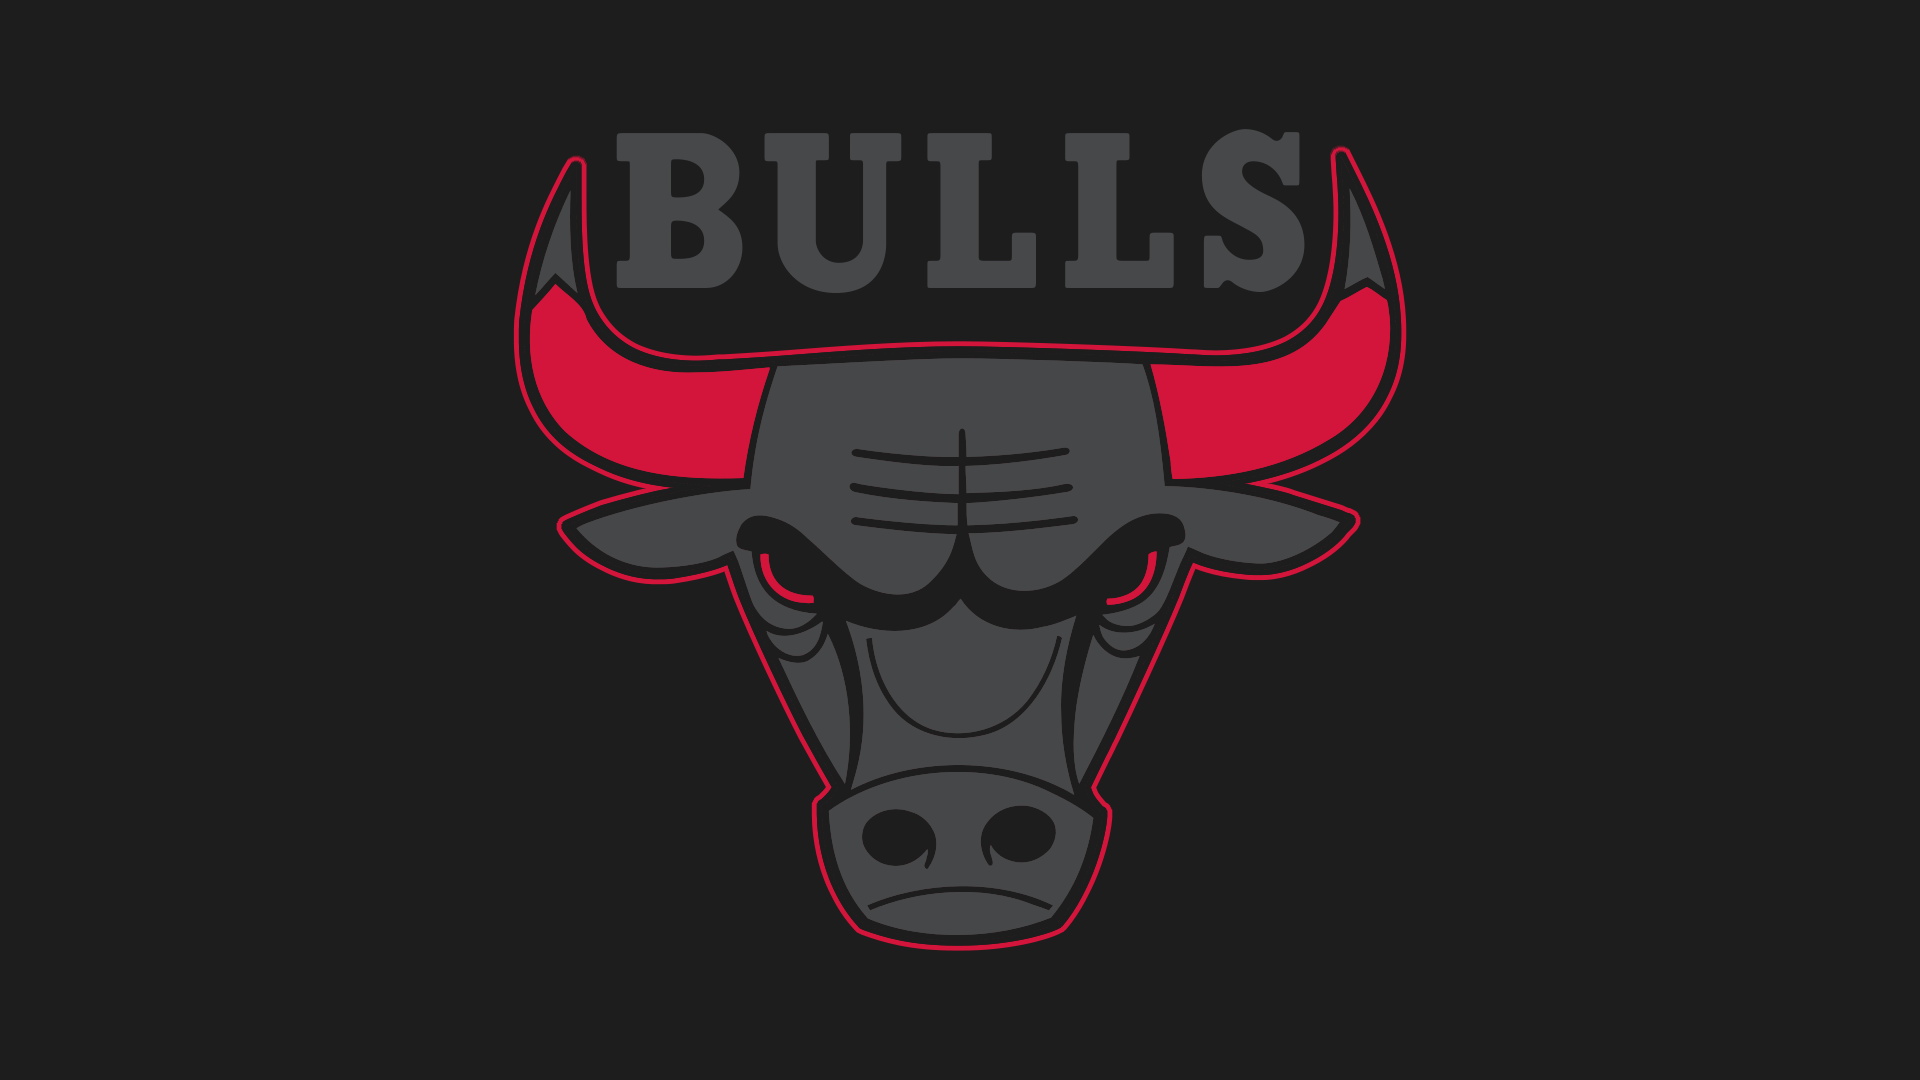 Michael Jordan Chicago Bulls Number Name NBA Basketball Boards iPad Air  Wallpapers Free Download